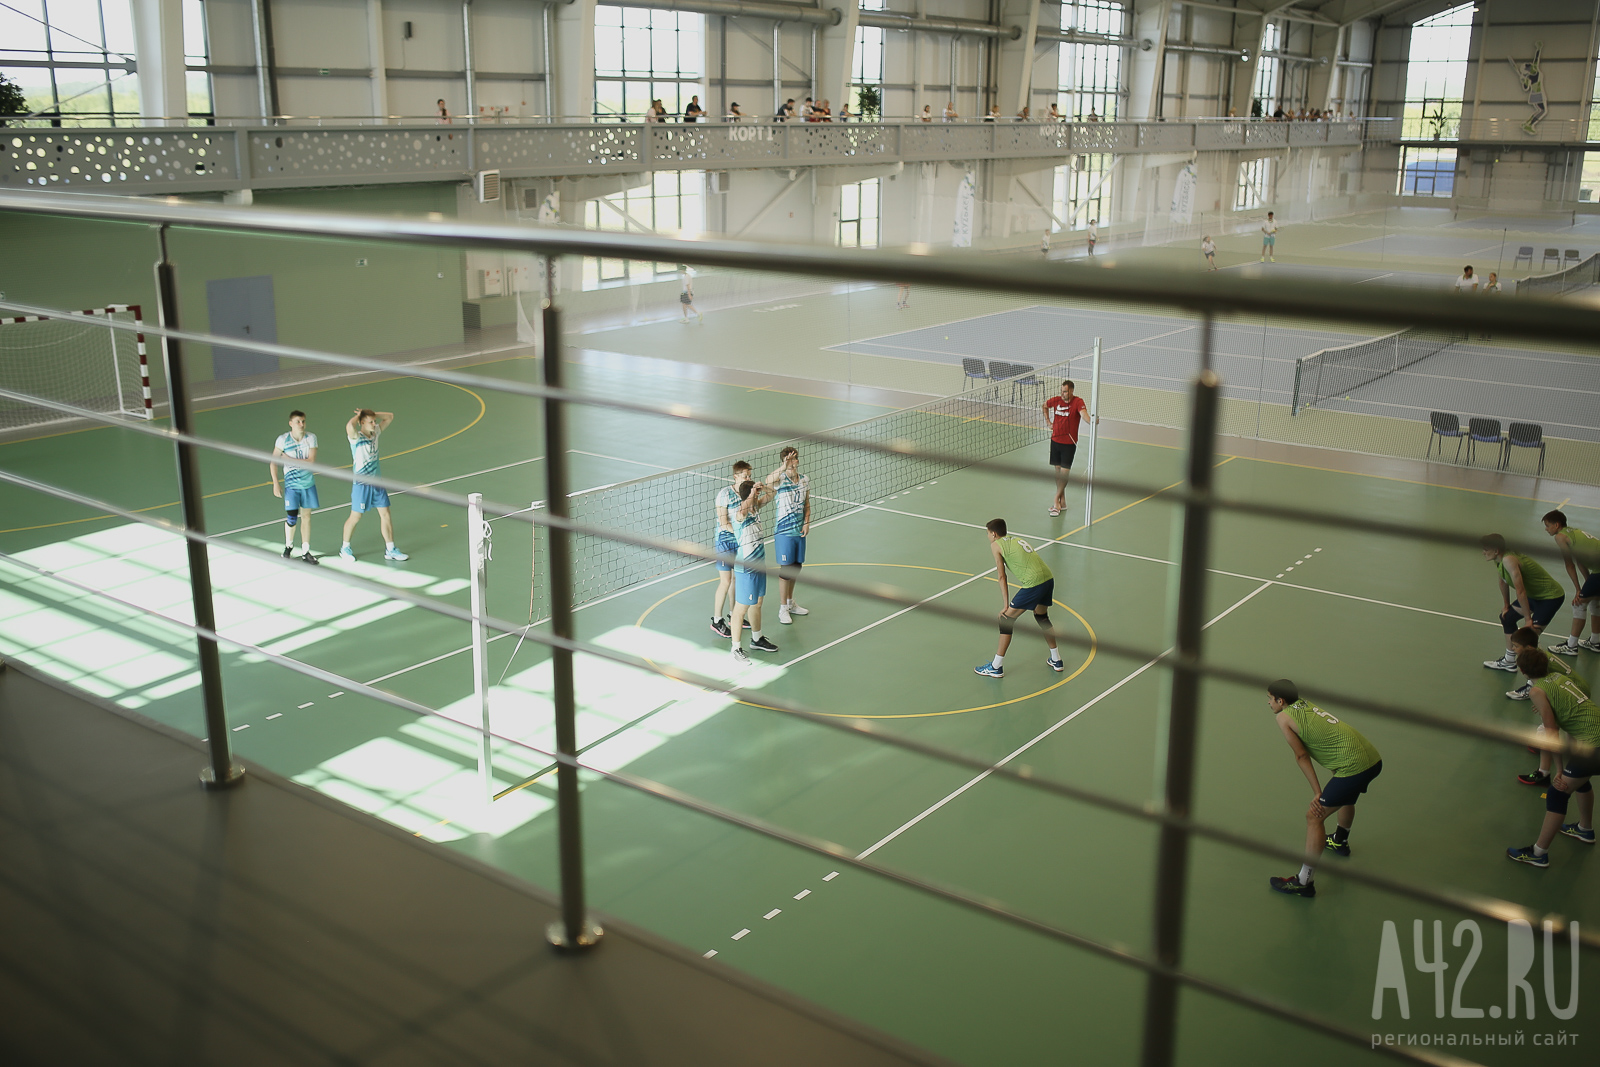 В Кемерове потратят более 19 млн рублей на устройство кортов в теннисном центре